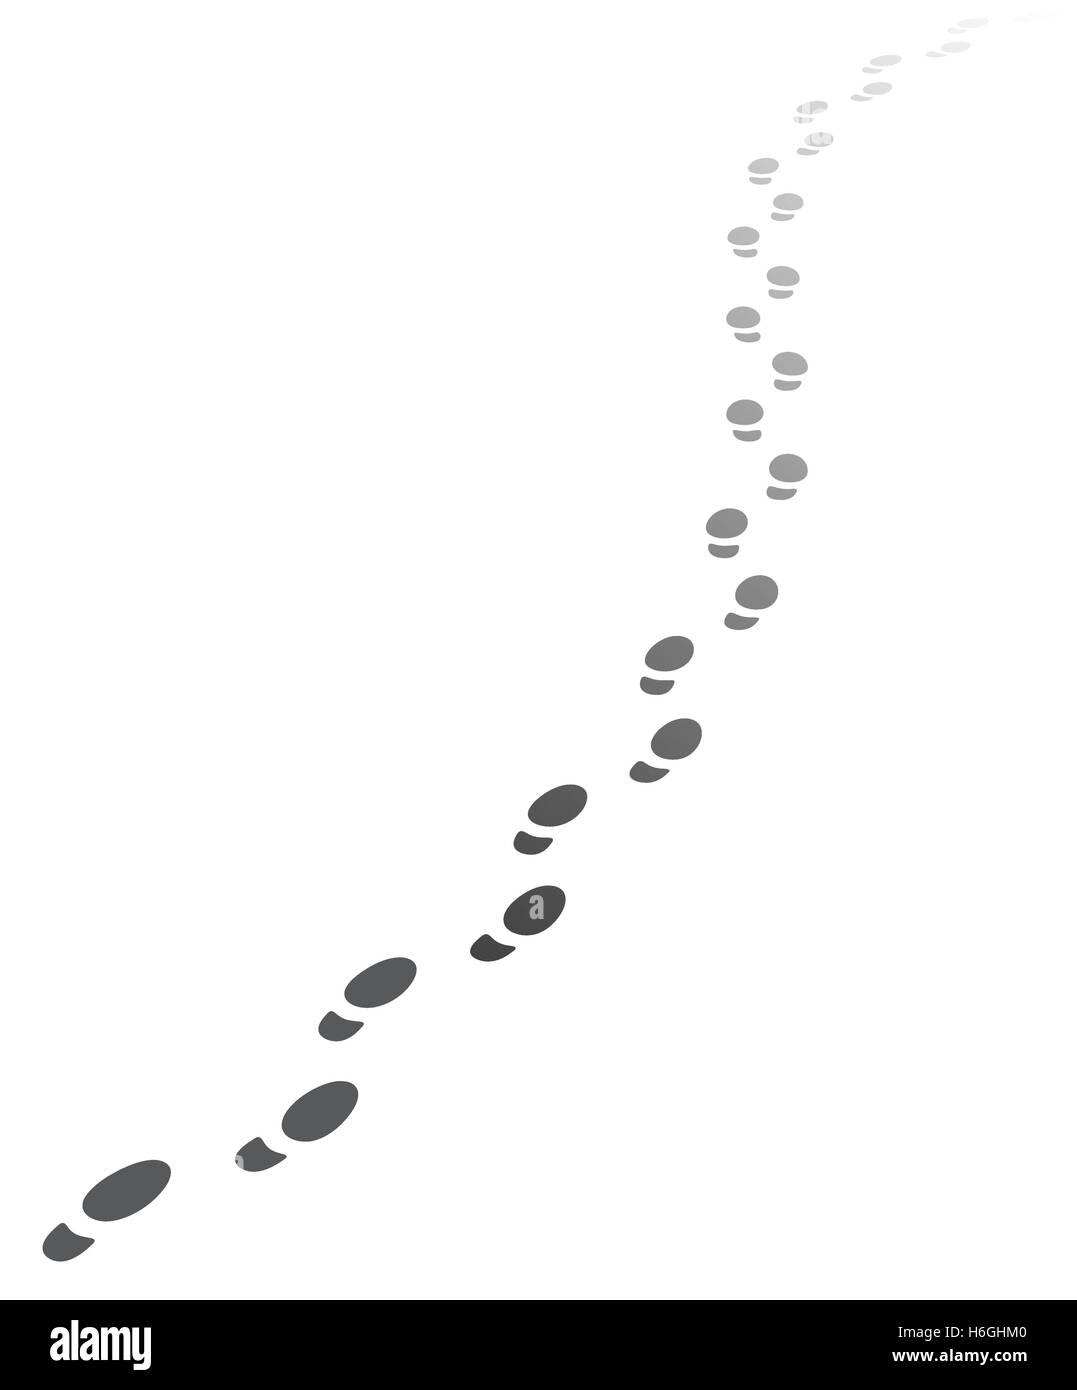 Schritte zu Fuß entfernt. Vektor-Illustration der zurückweichenden menschliche Fußabdrücke mit Textfreiraum. Vektor-EPS10. Stock Vektor